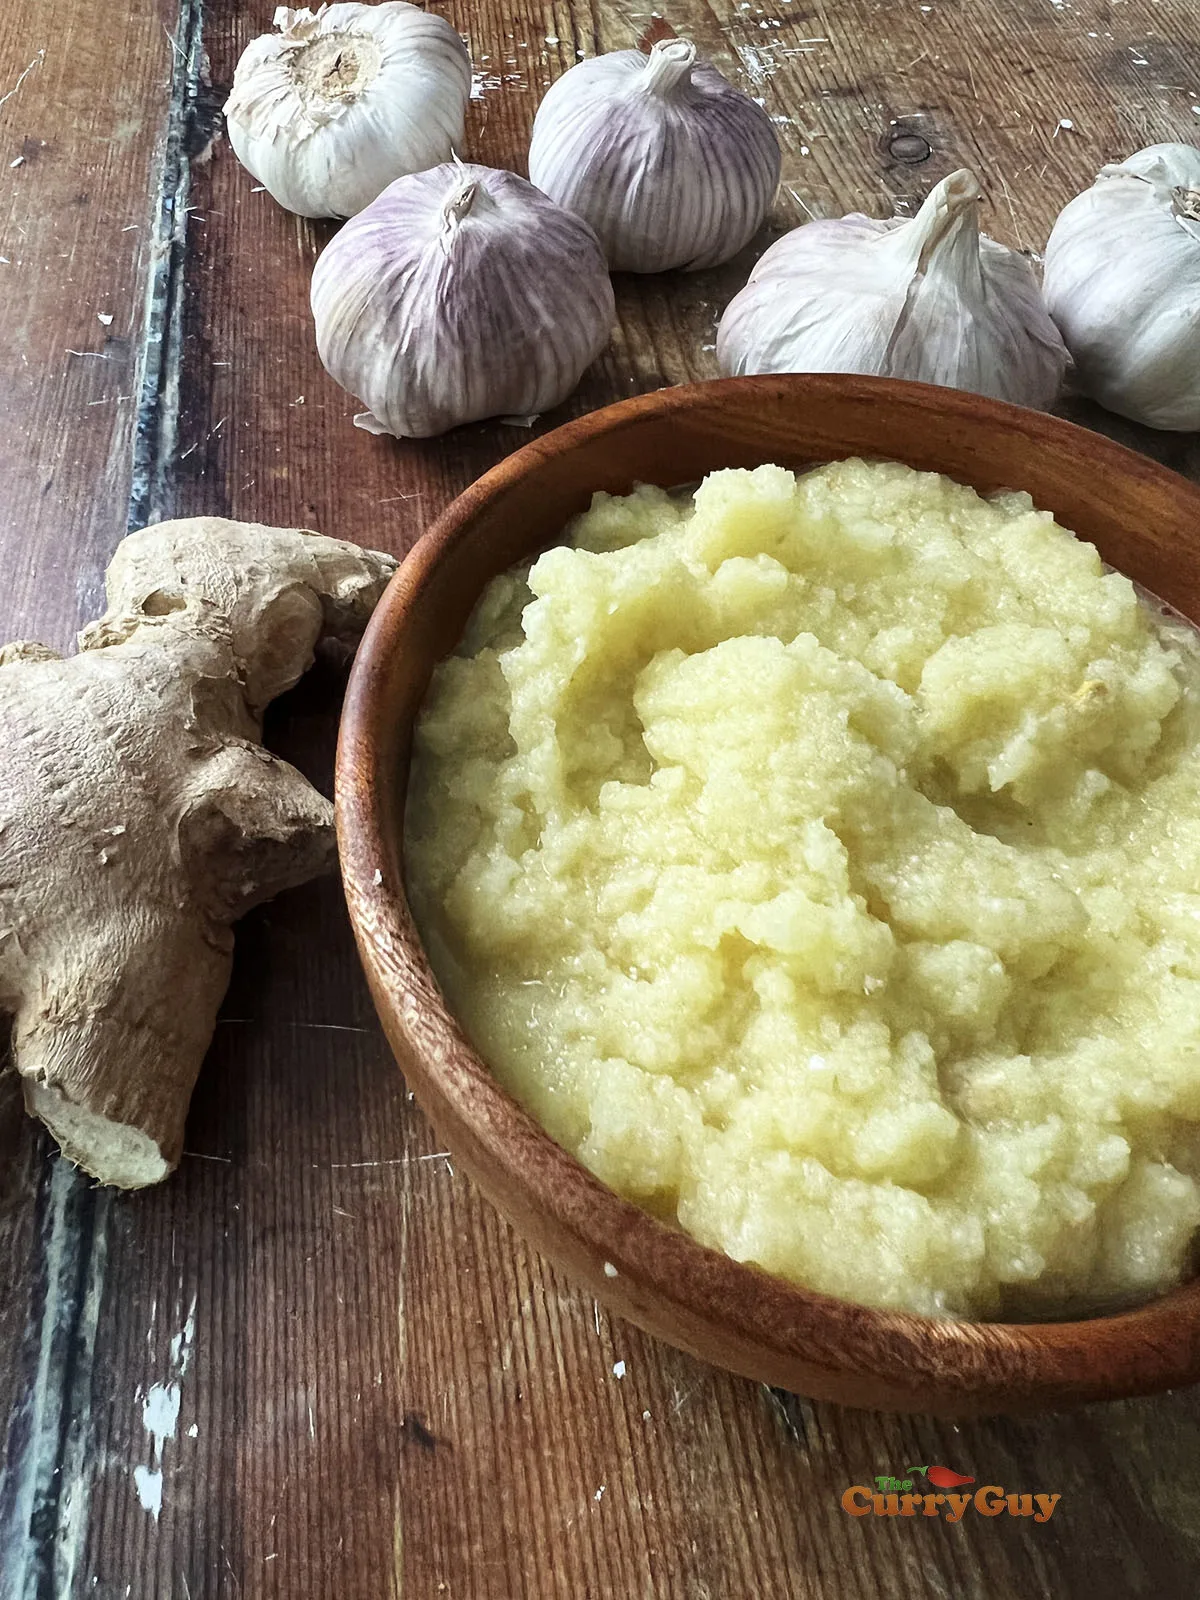 Garlic and ginger paste.